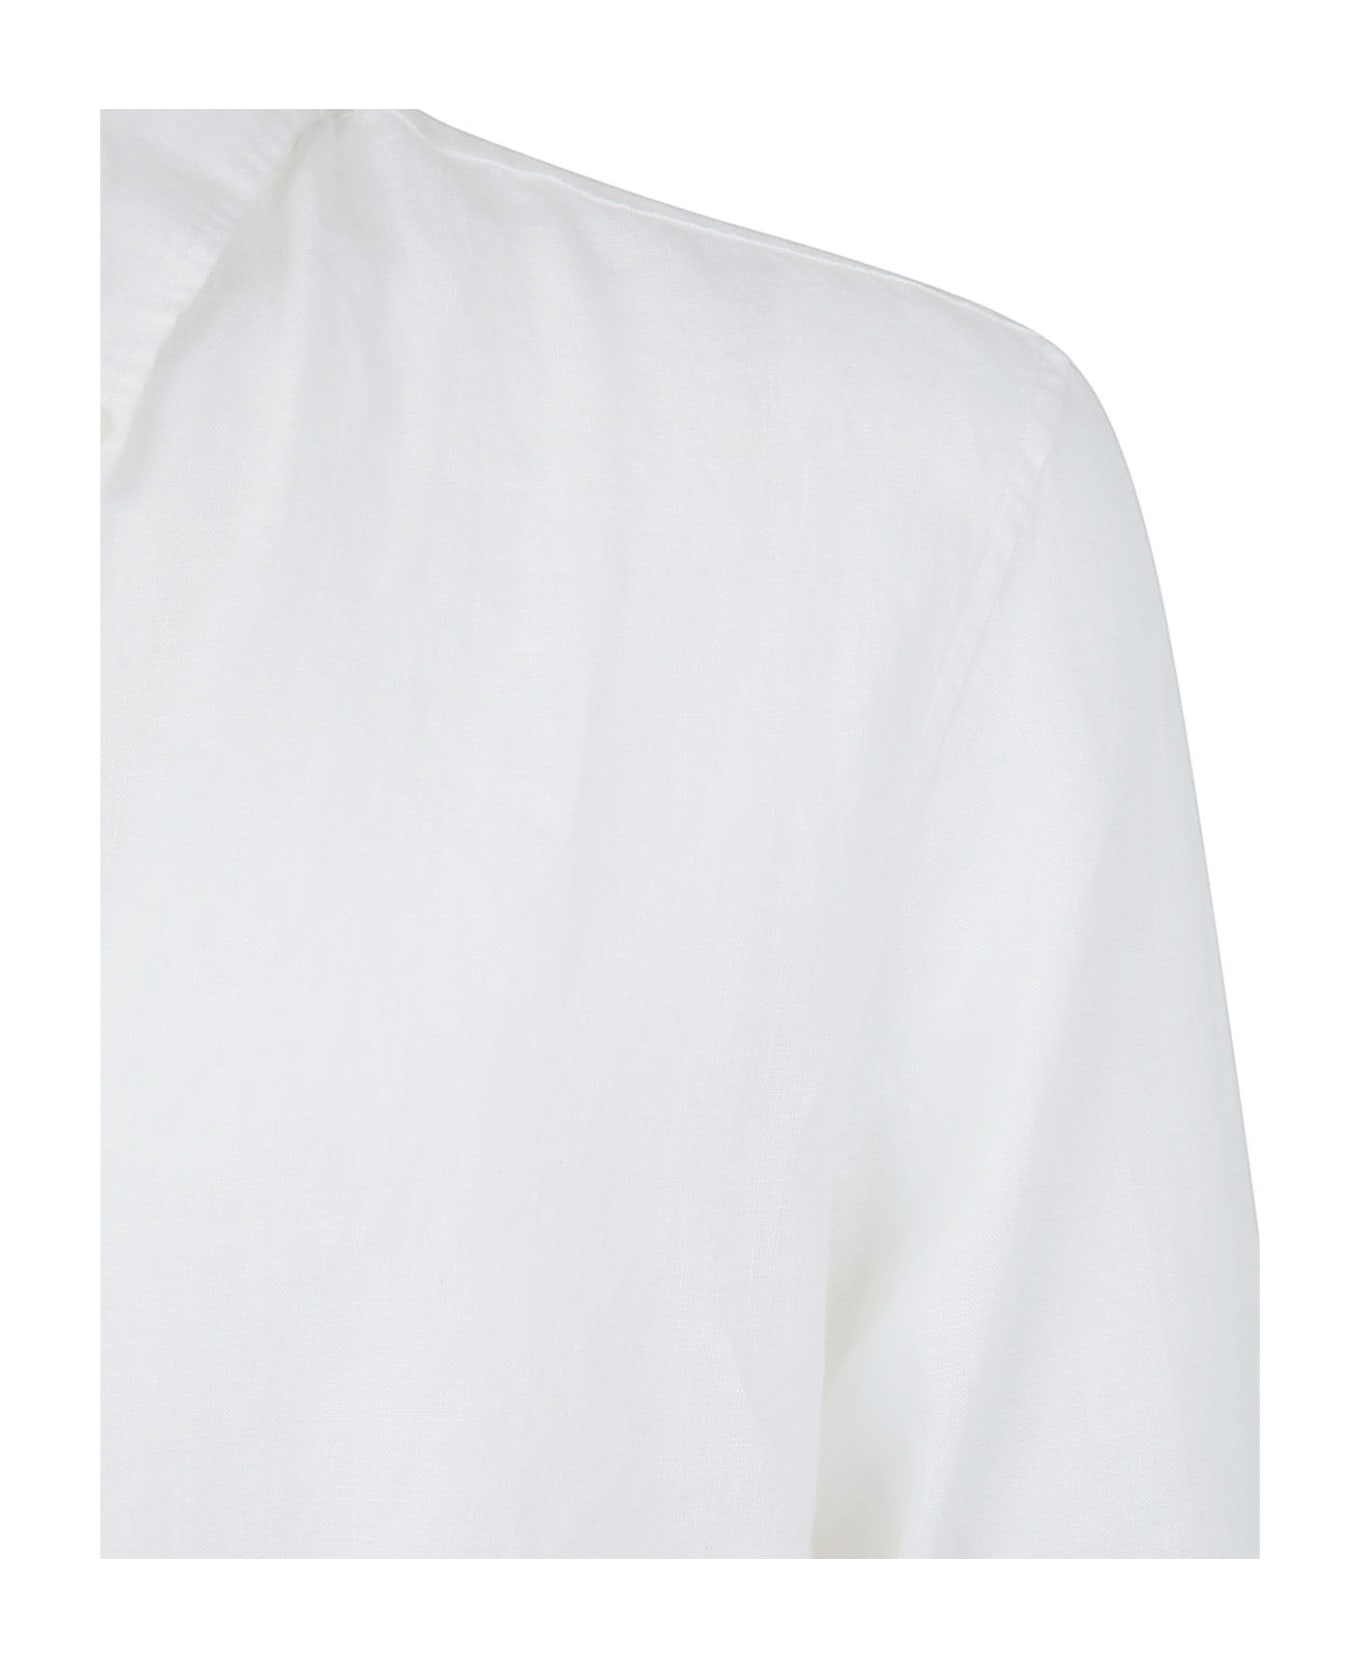 Michael Kors Long Sleeved Linen Shirt - White